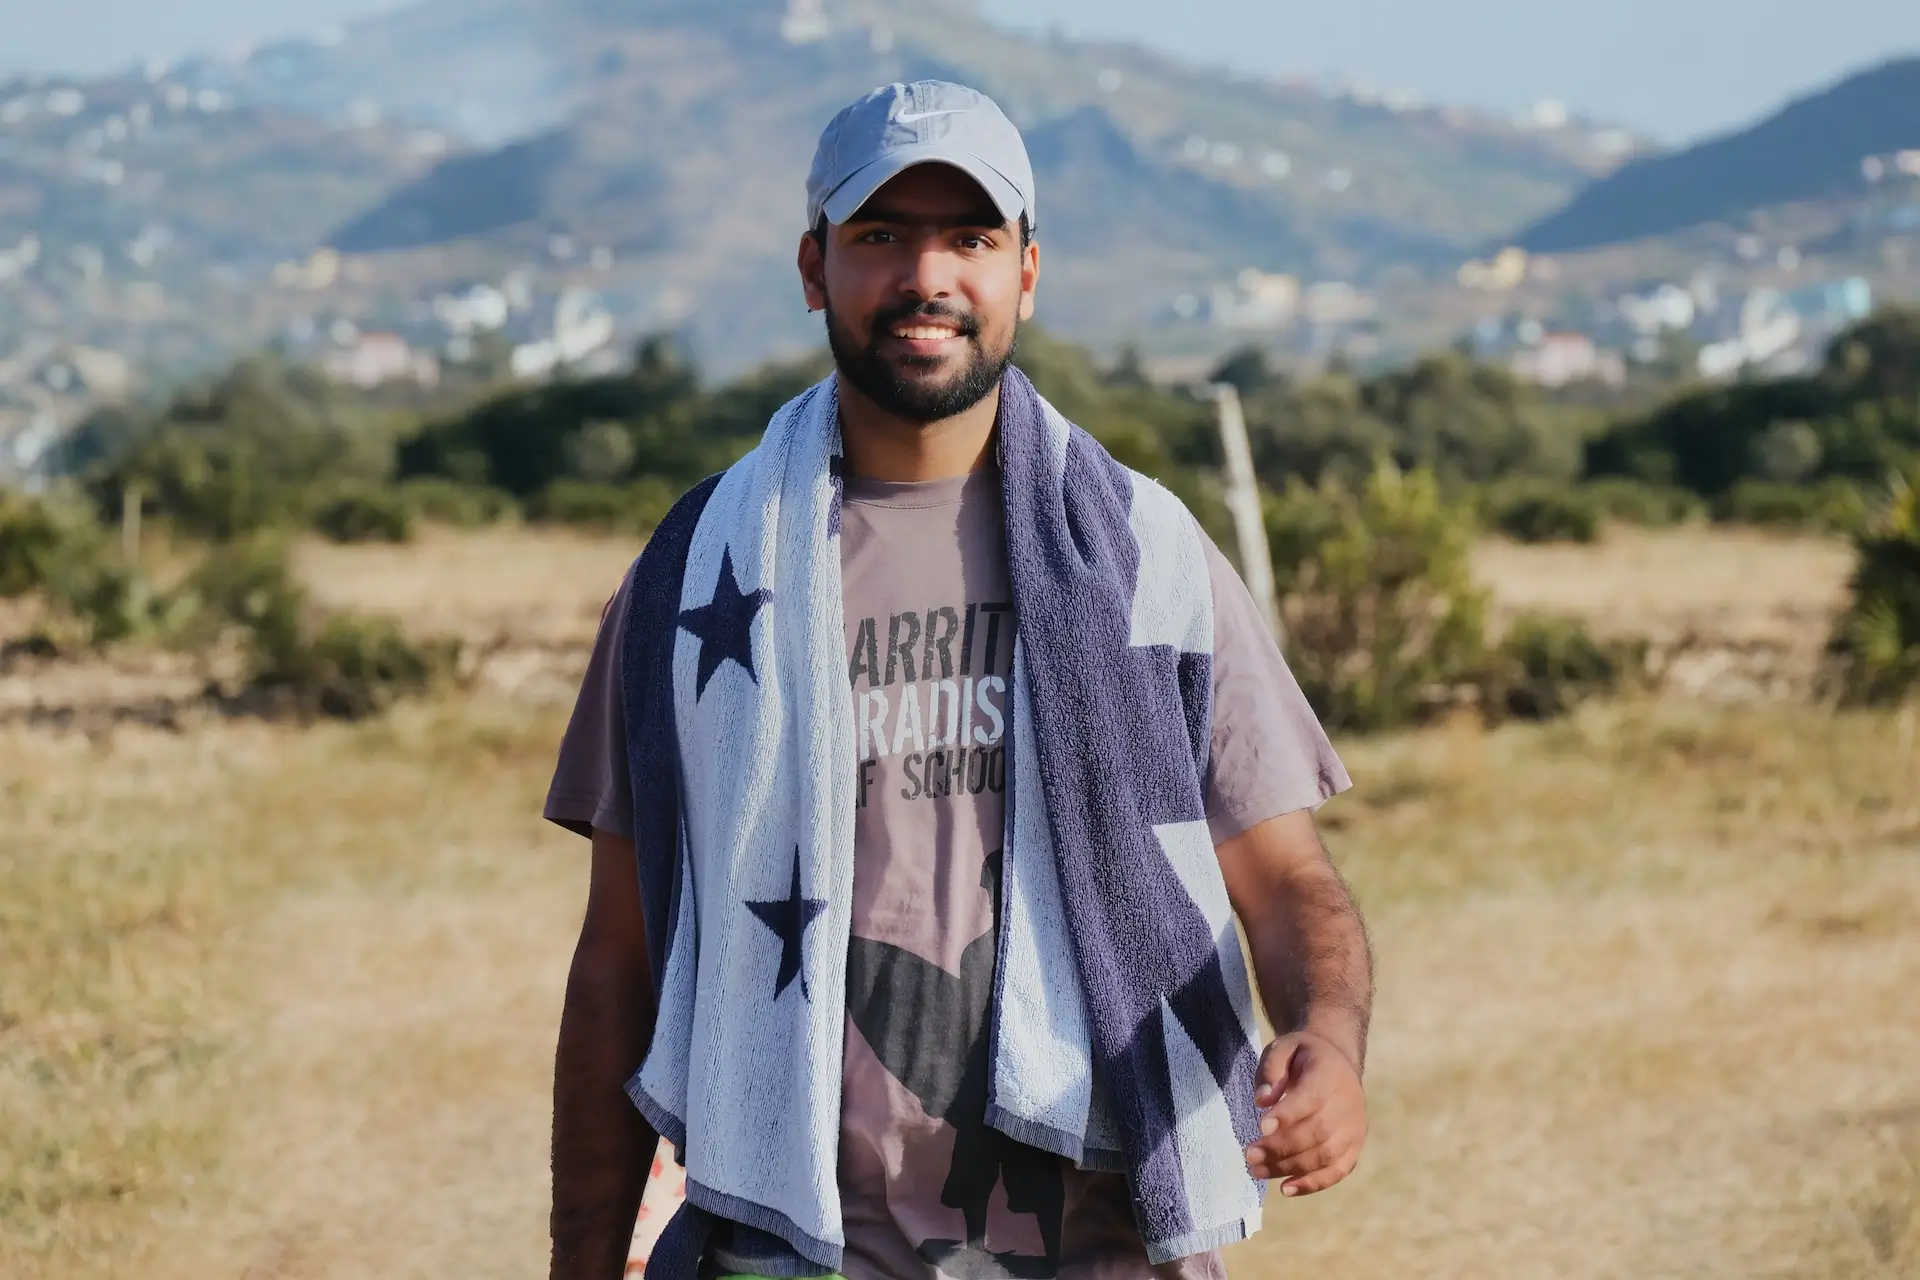 Lire la suite à propos de l’article Pourquoi devenir Auto-Entrepreneur au Maroc : L’interview de Youssef